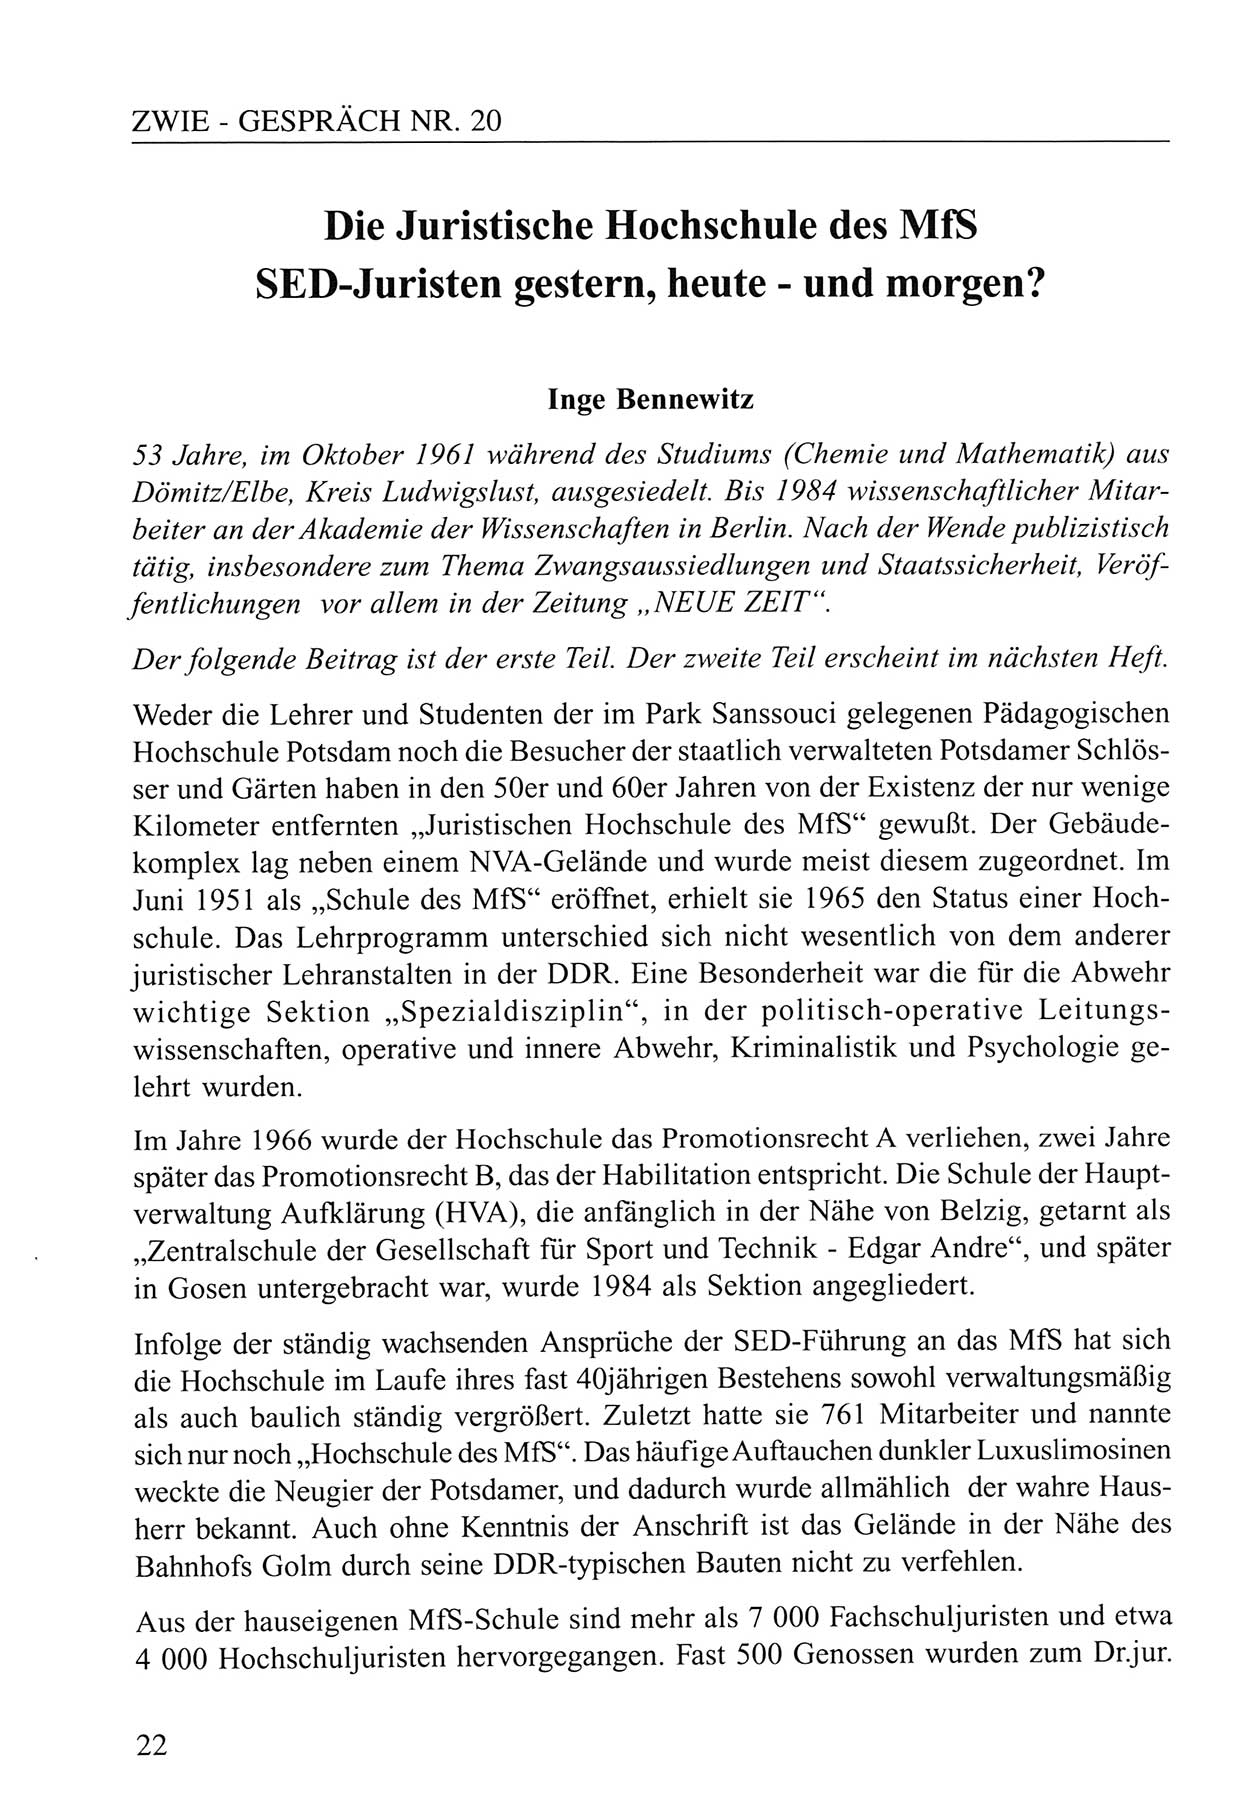 Zwie-Gespräch, Beiträge zum Umgang mit der Staatssicherheits-Vergangenheit [Deutsche Demokratische Republik (DDR)], Ausgabe Nr. 20, Berlin 1994, Seite 22 (Zwie-Gespr. Ausg. 20 1994, S. 22)